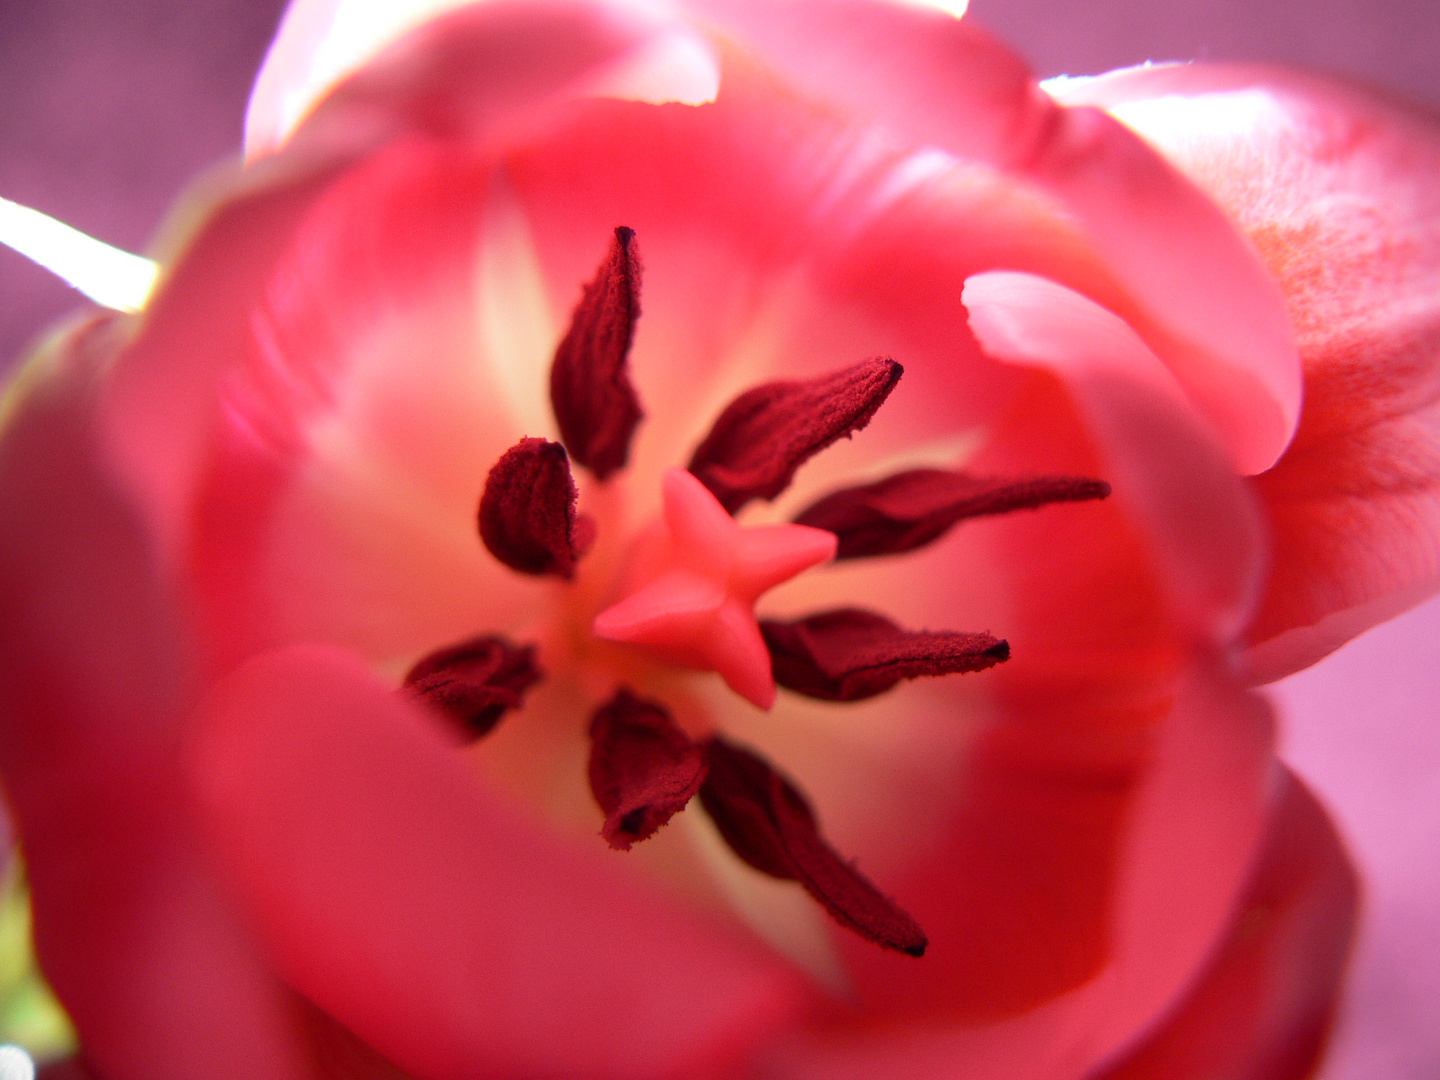 & noch eine rosa Tulpe. ;)